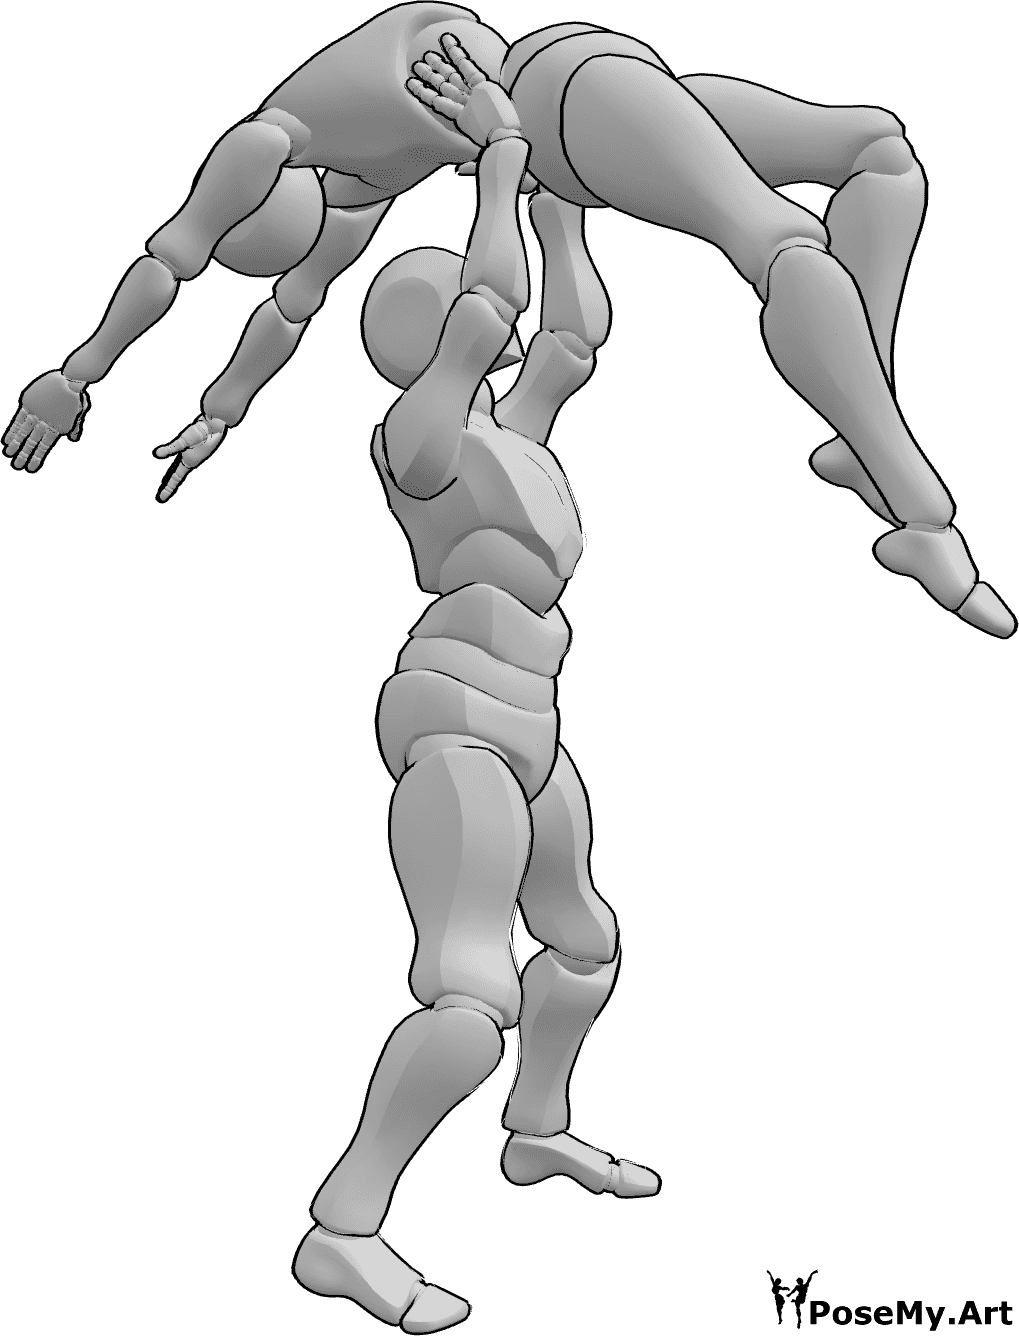 Referencia de poses- El hombre levanta a la mujer - El macho levanta a la hembra por encima de su cabeza